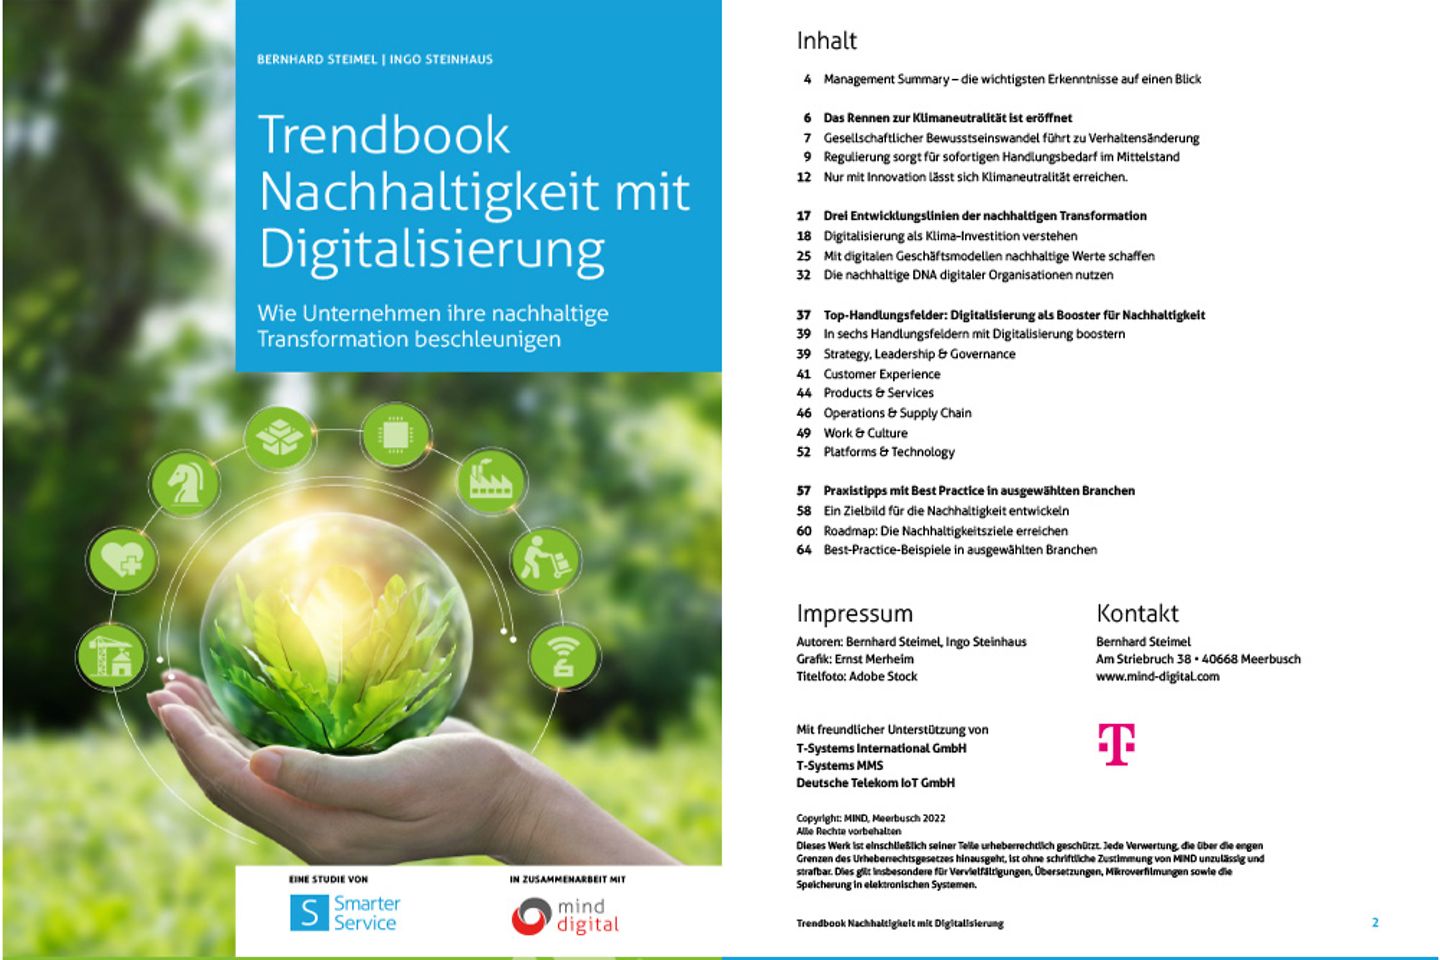 Cover und die nächste Seite des Trendbooks als Screenshot: Nachhaltigkeit mit Digitalisierung